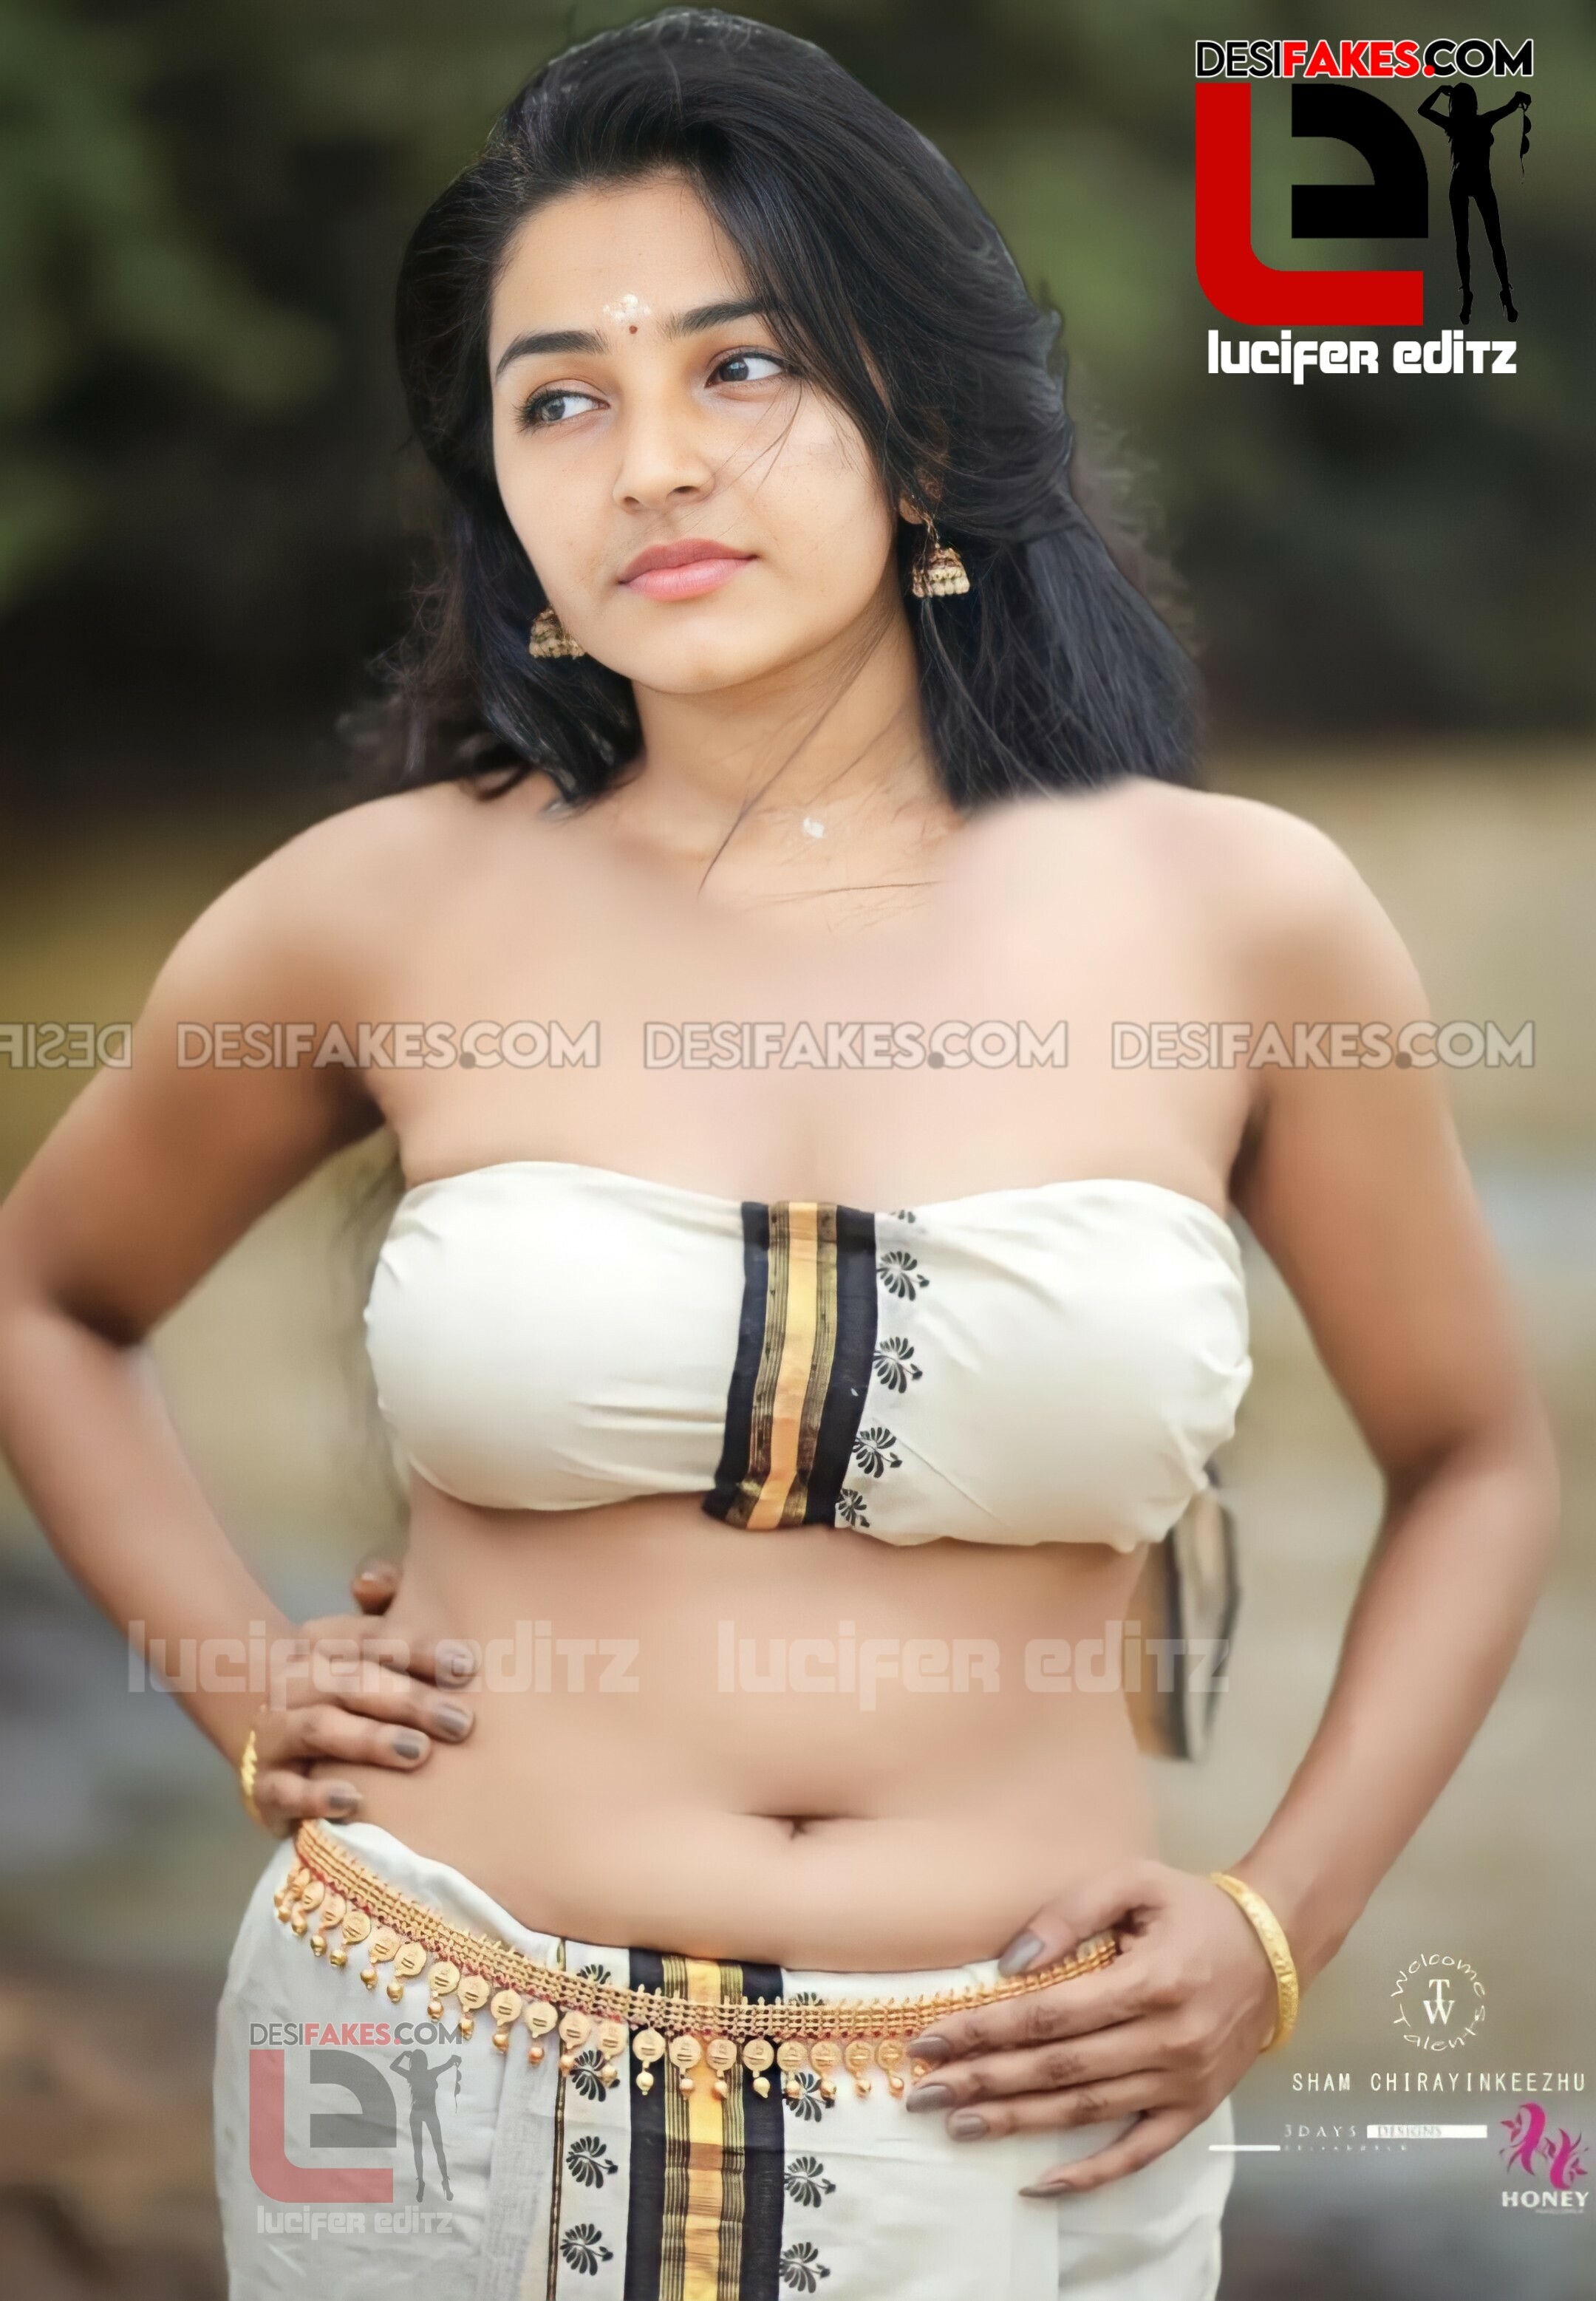 Hot Actress Rajisha Vijayan Photoshoot Naked Sex Images HQ Desi Fakes Edit Work